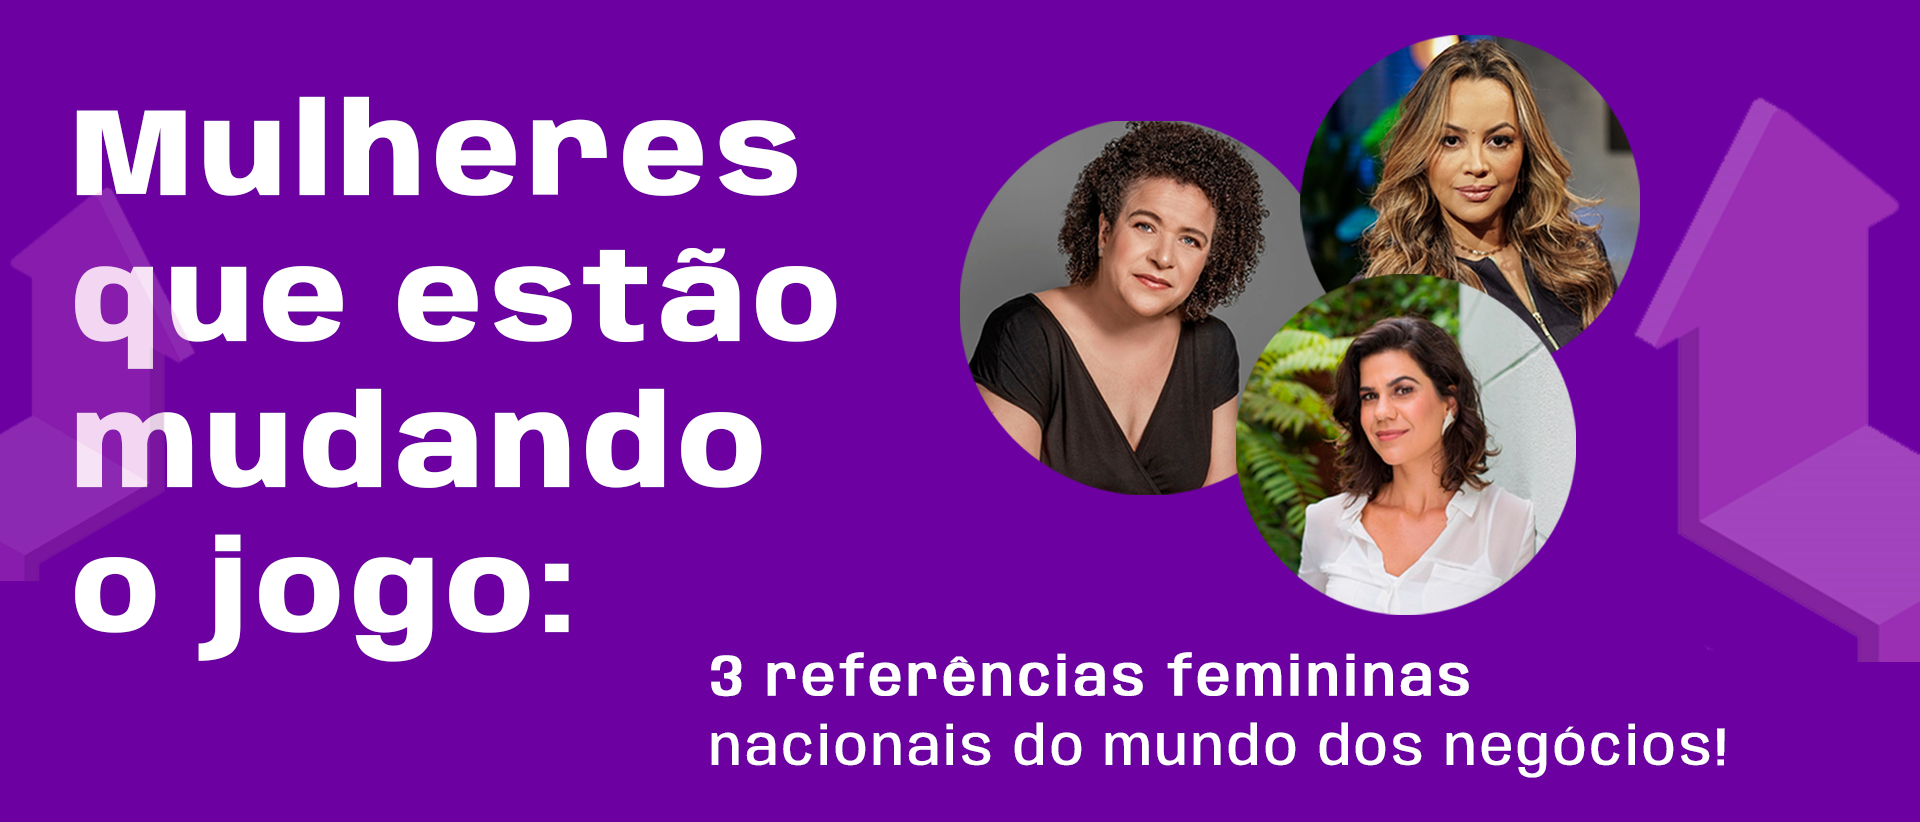 Mulheres que estão mudando o jogo: 3 referências femininas nacionais do mundo dos negócios! 